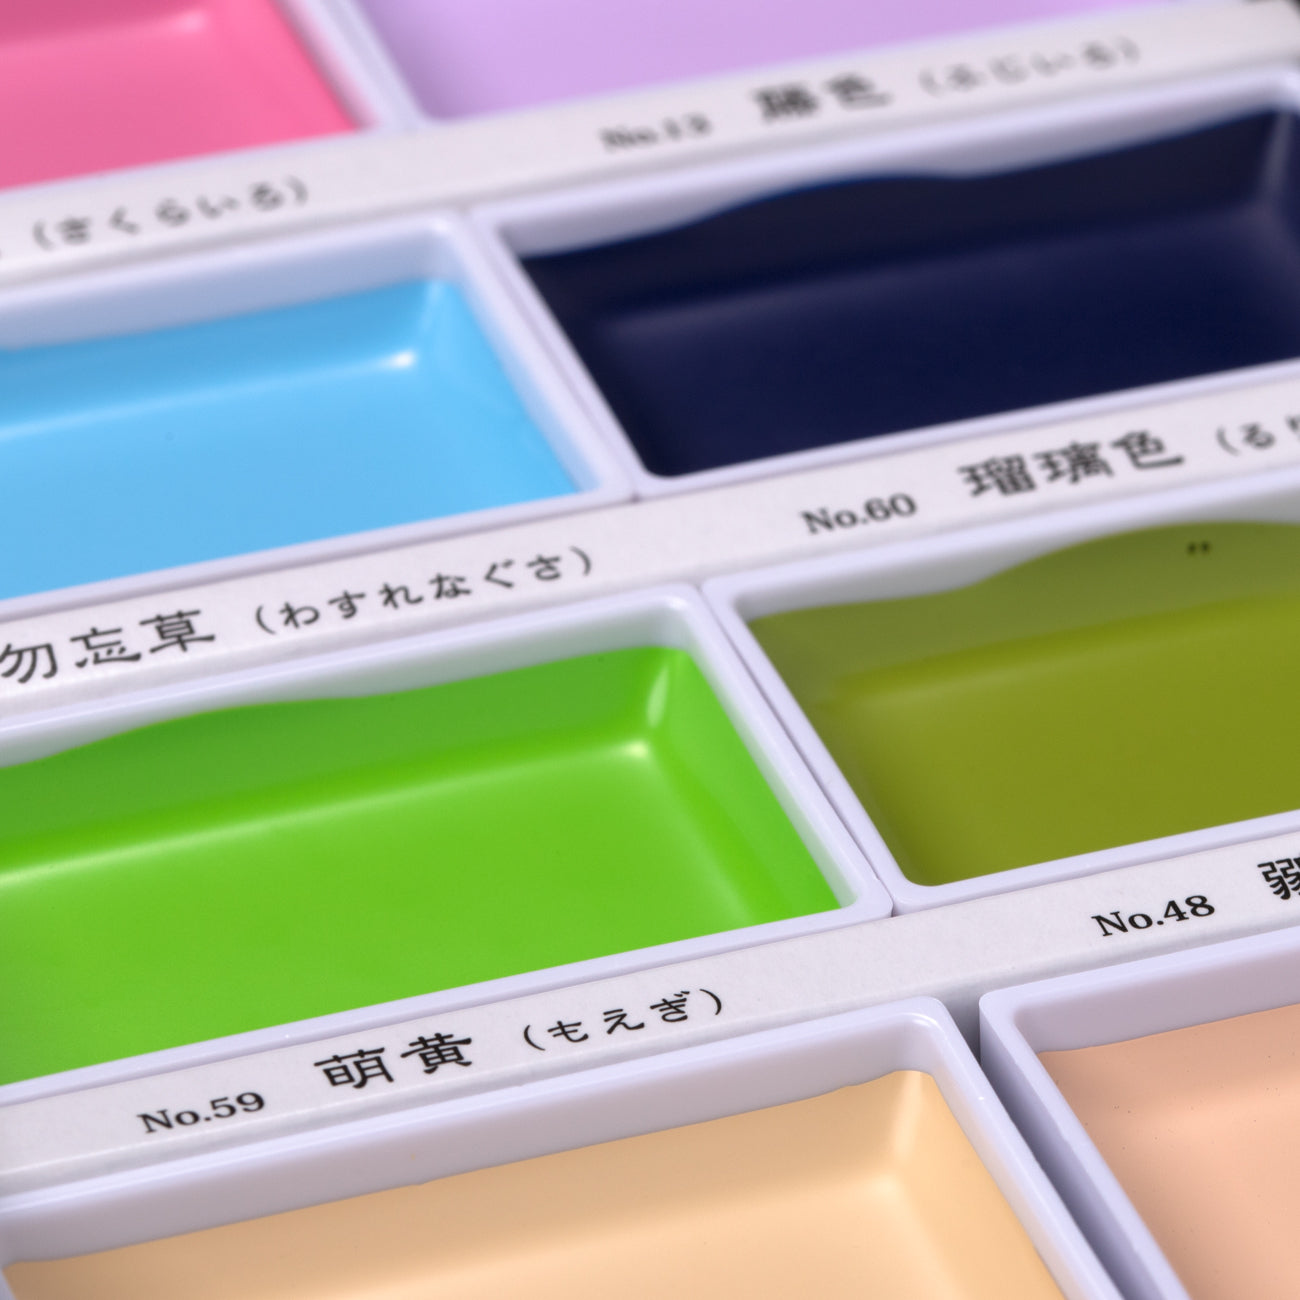 Kuretake Gansai Tambi Watercolour Paint Refill Pan